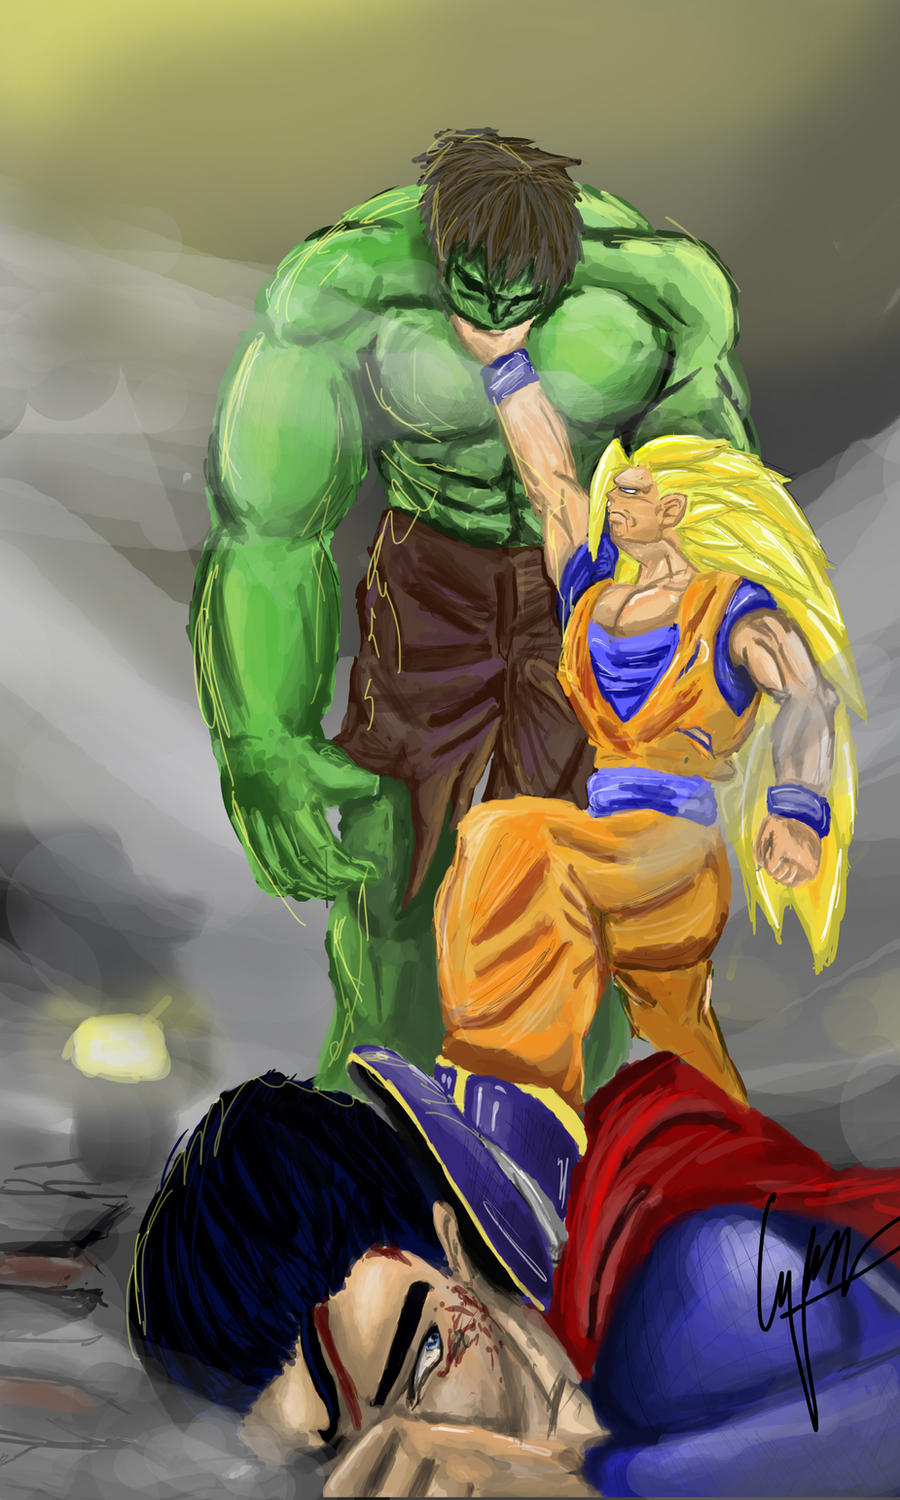 goku_vs_hulk_vs_superman_by_safyle-d5cliqq.jpg